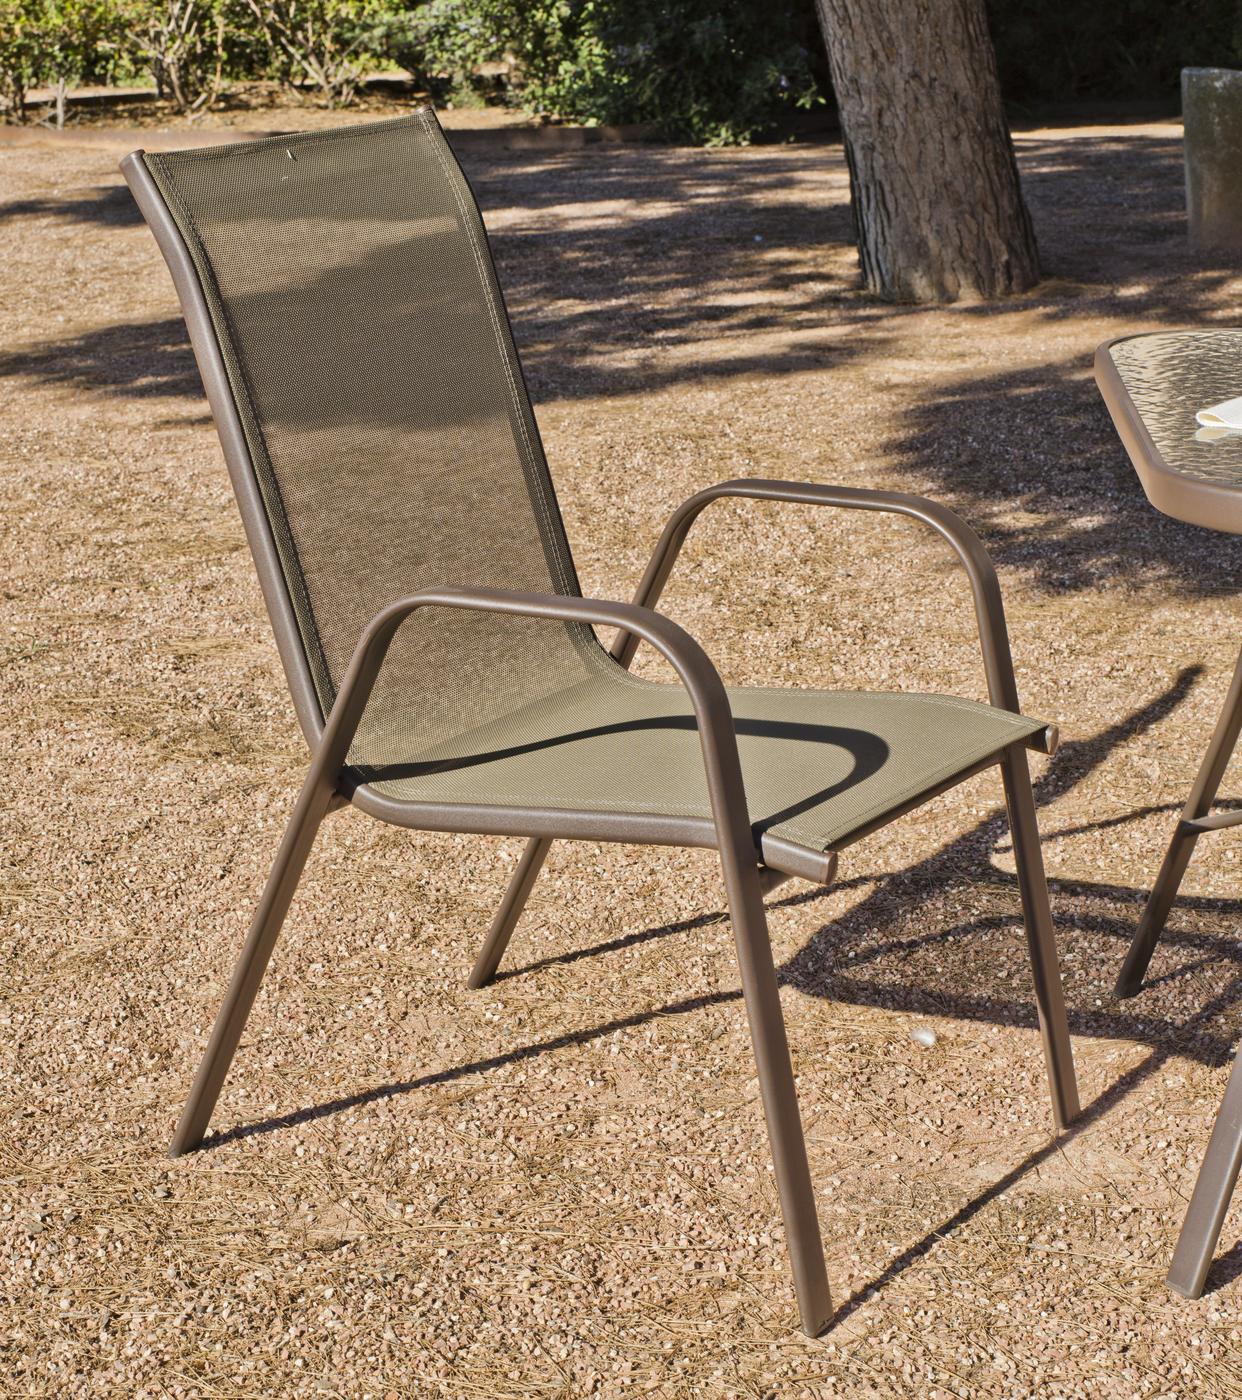 Conjunto Acero Macao 7 - Conjunto de acero color bronce: sofá 2 plazas + 2 sillones + mesa centro